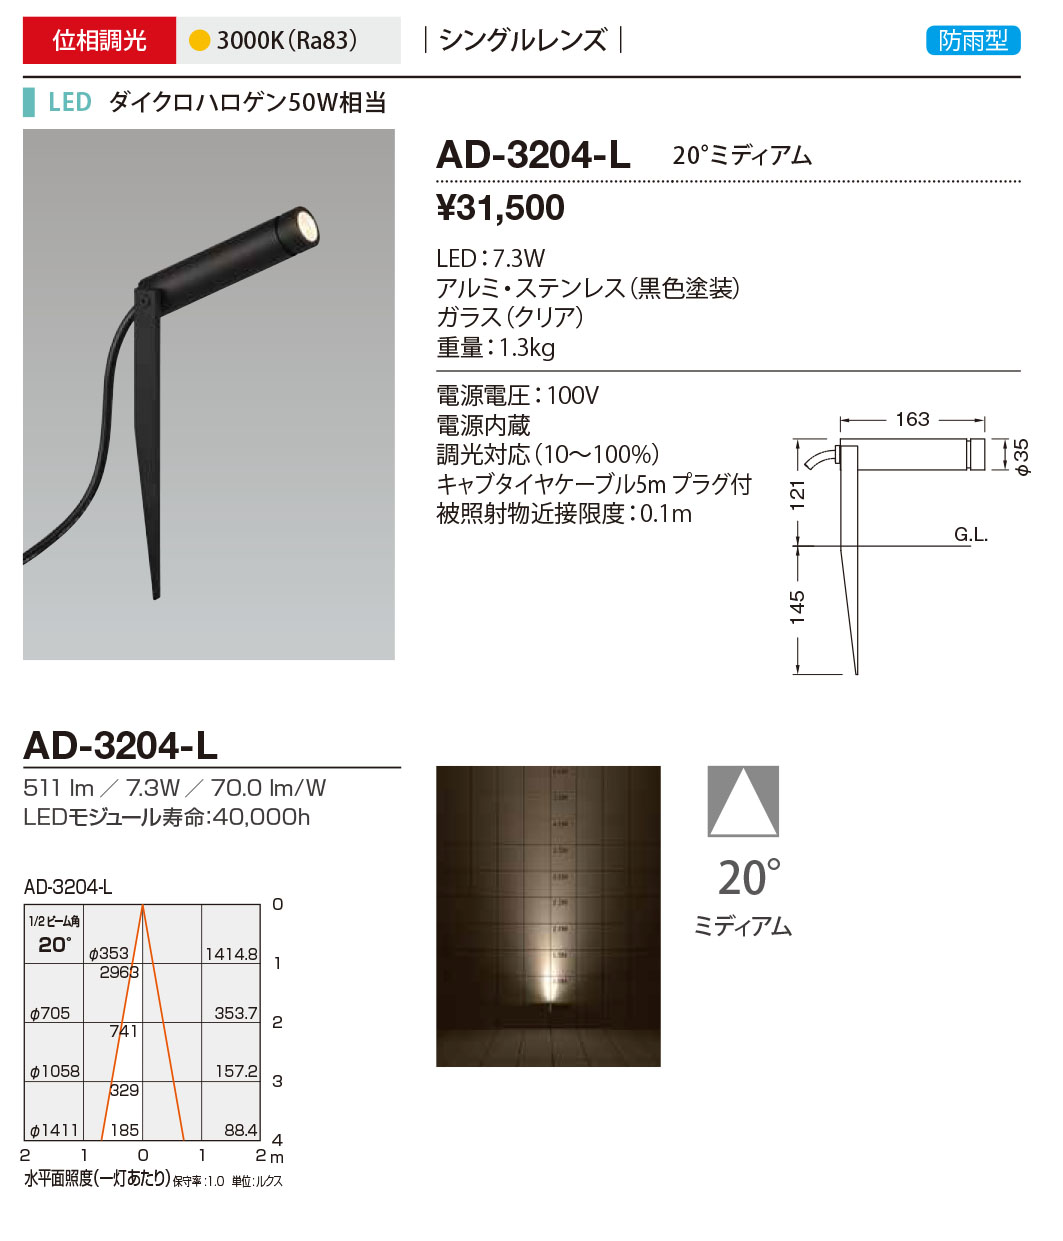 AD-3204-L RcƖ OX|bgCg F LED dF  20x